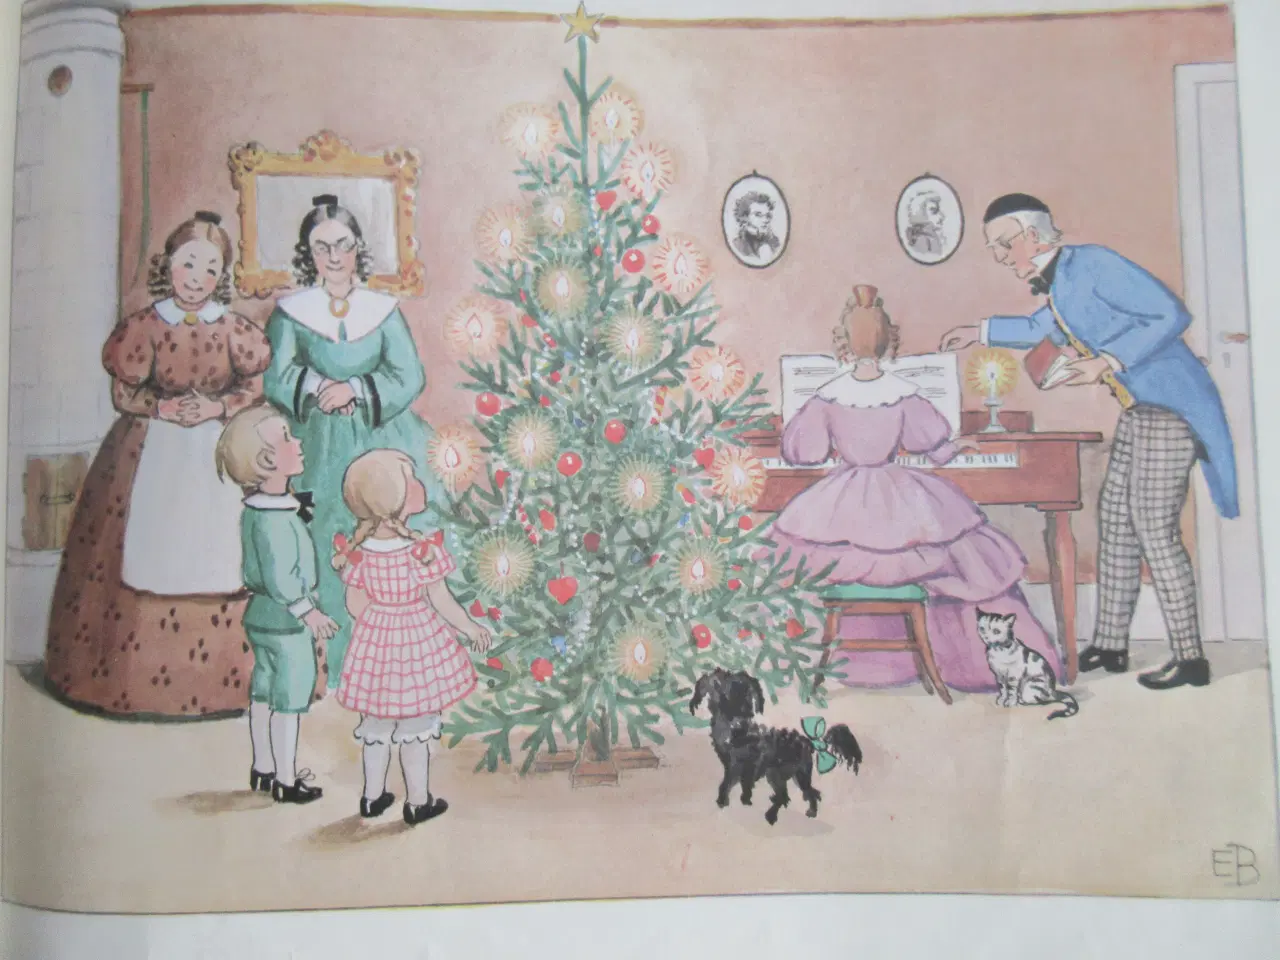 Billede 5 - Pers og Lottes jul - af Elsa Beskow ;-)